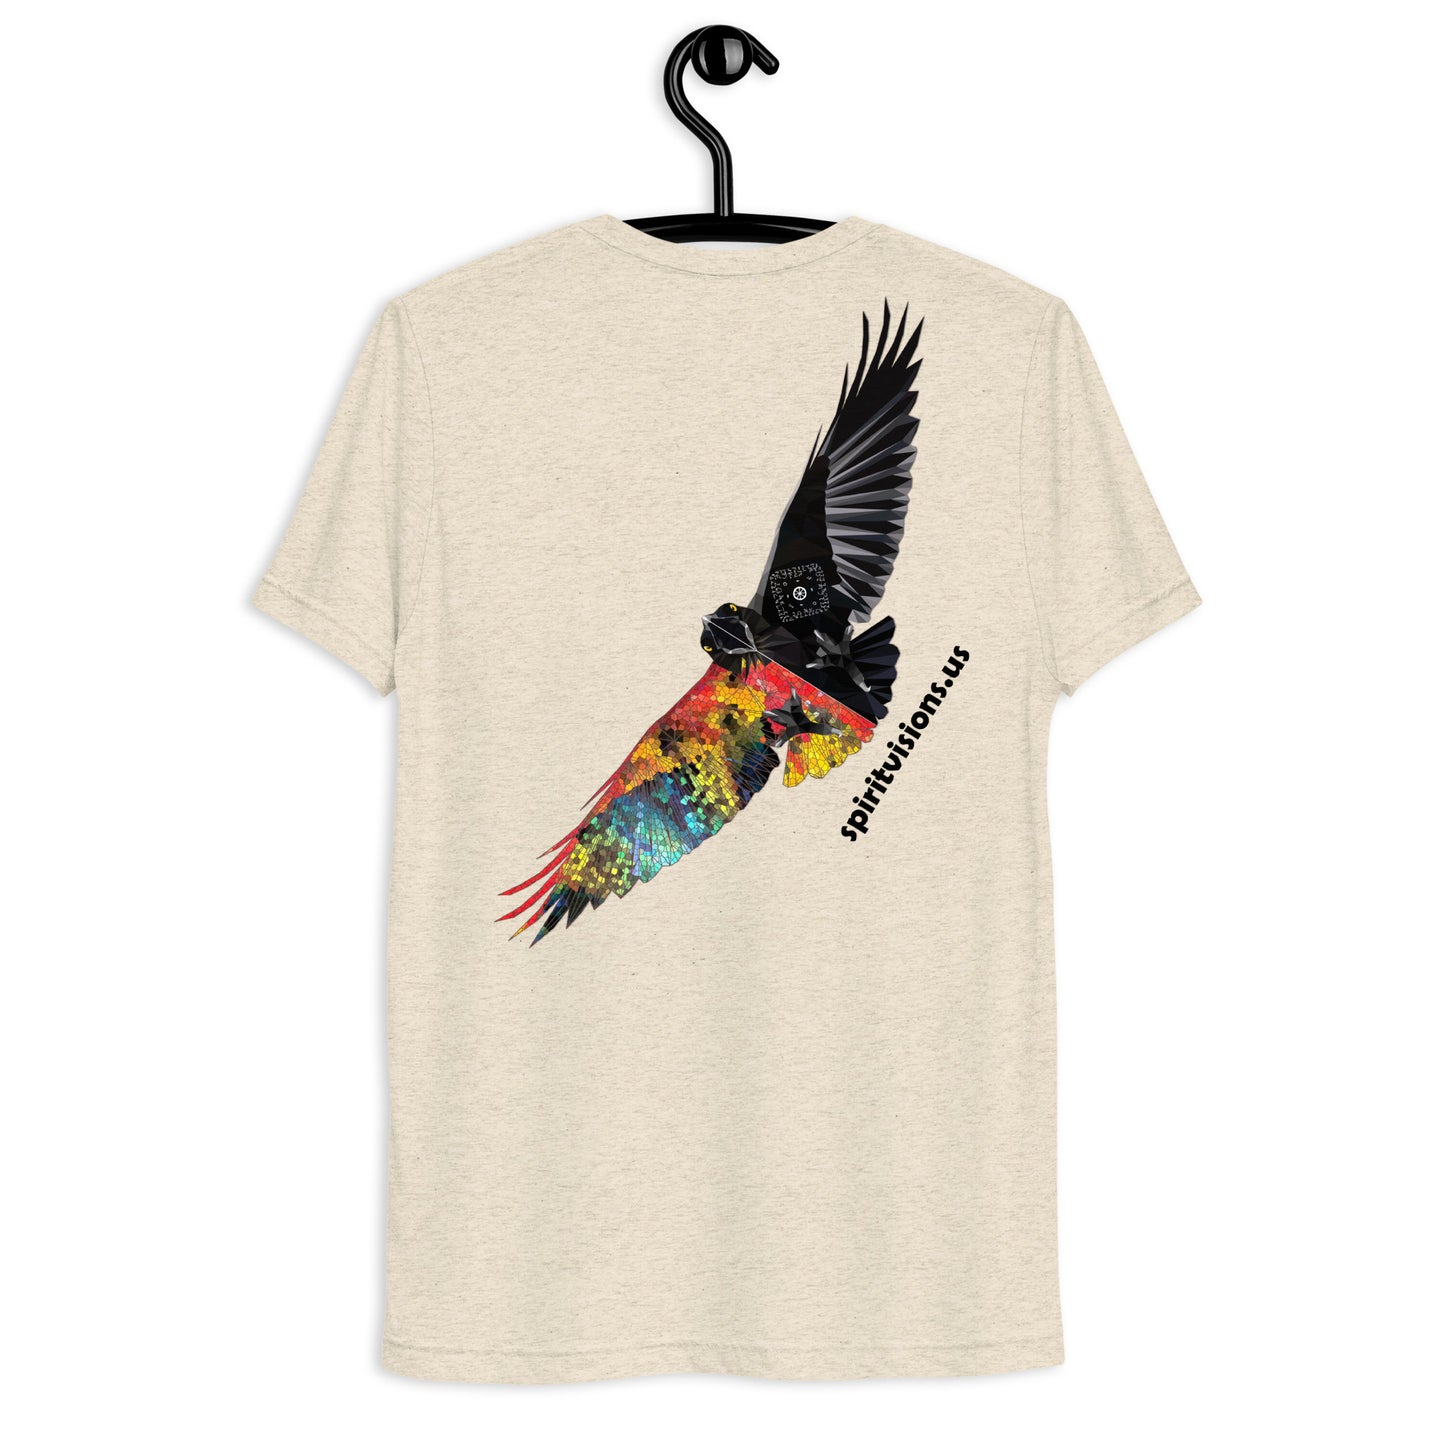 Camiseta unisex de manga corta "Big Bird"